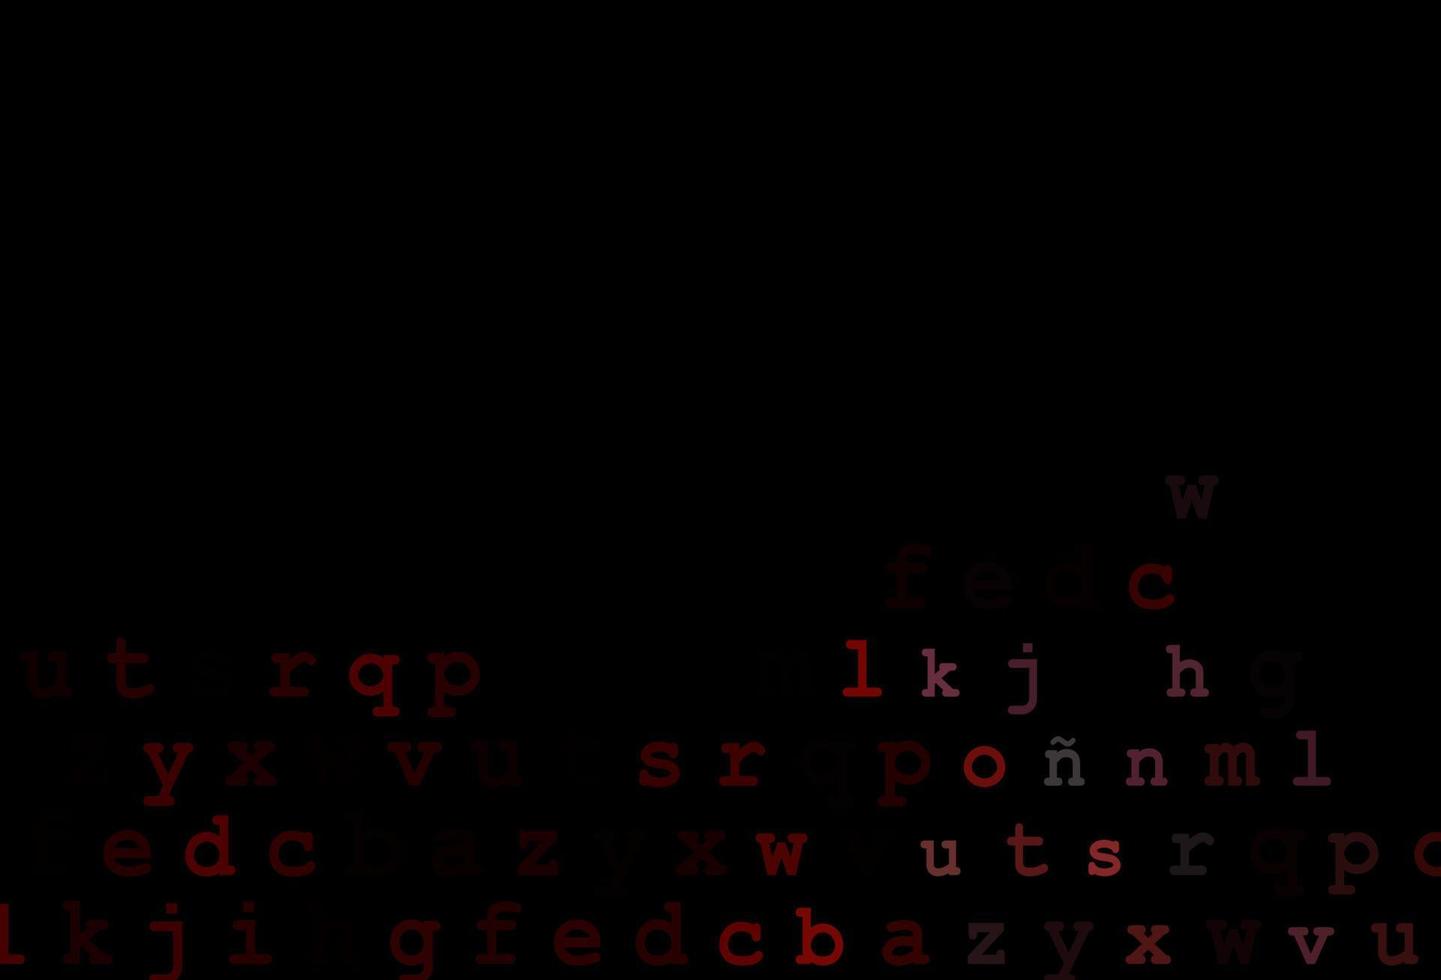 diseño de vector rojo oscuro con alfabeto latino.